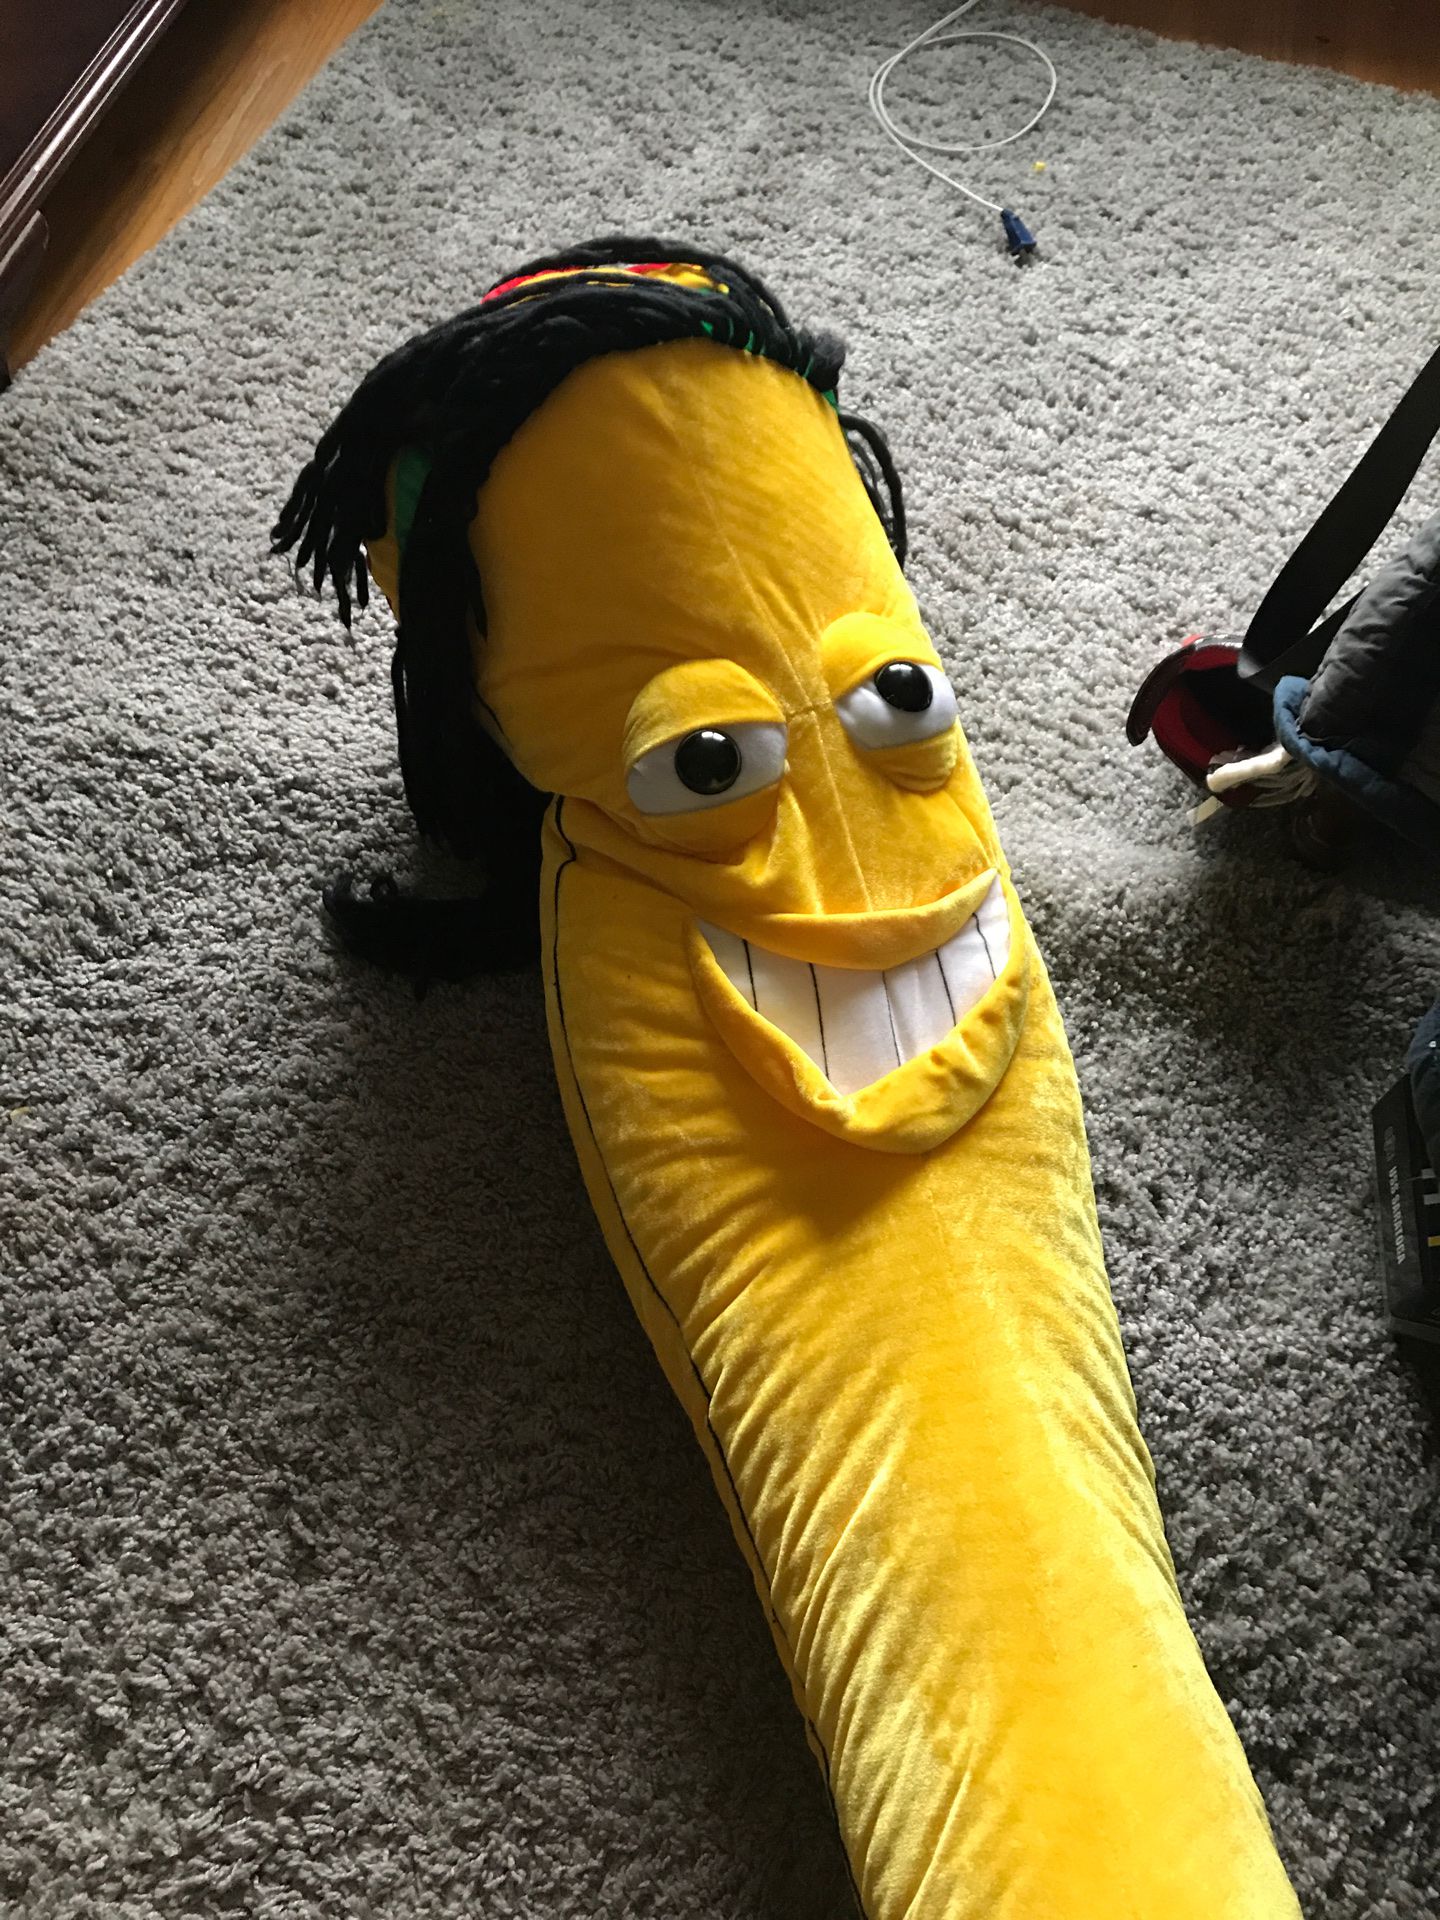 Giant stuffed banana